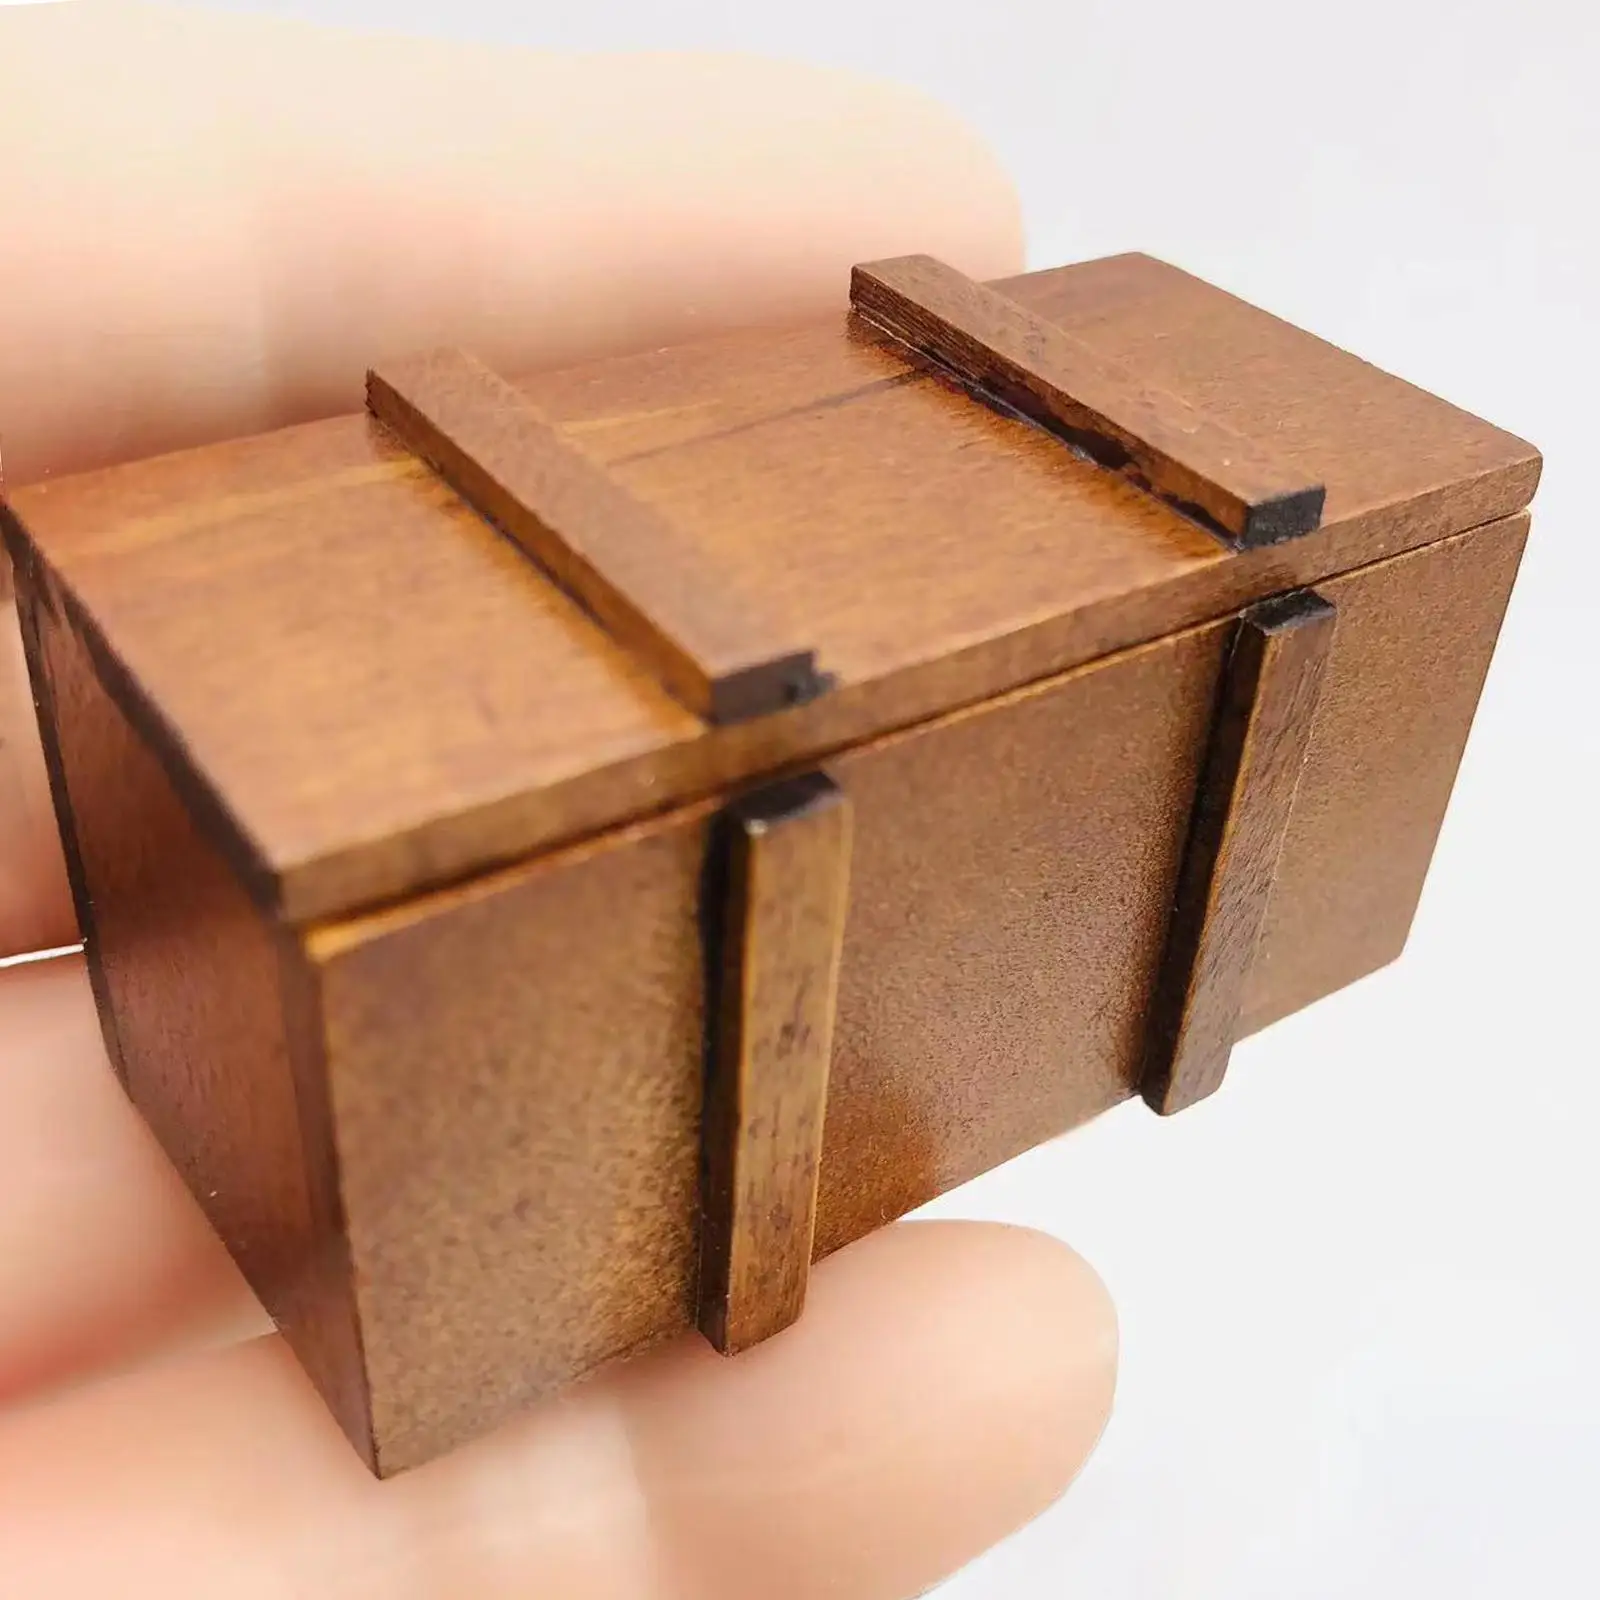 1:12 Doll House Retro Wooden Treasure Chest Mini Model Furniture Accessories Durable Simulated Landscape Jewelry Case Organizer